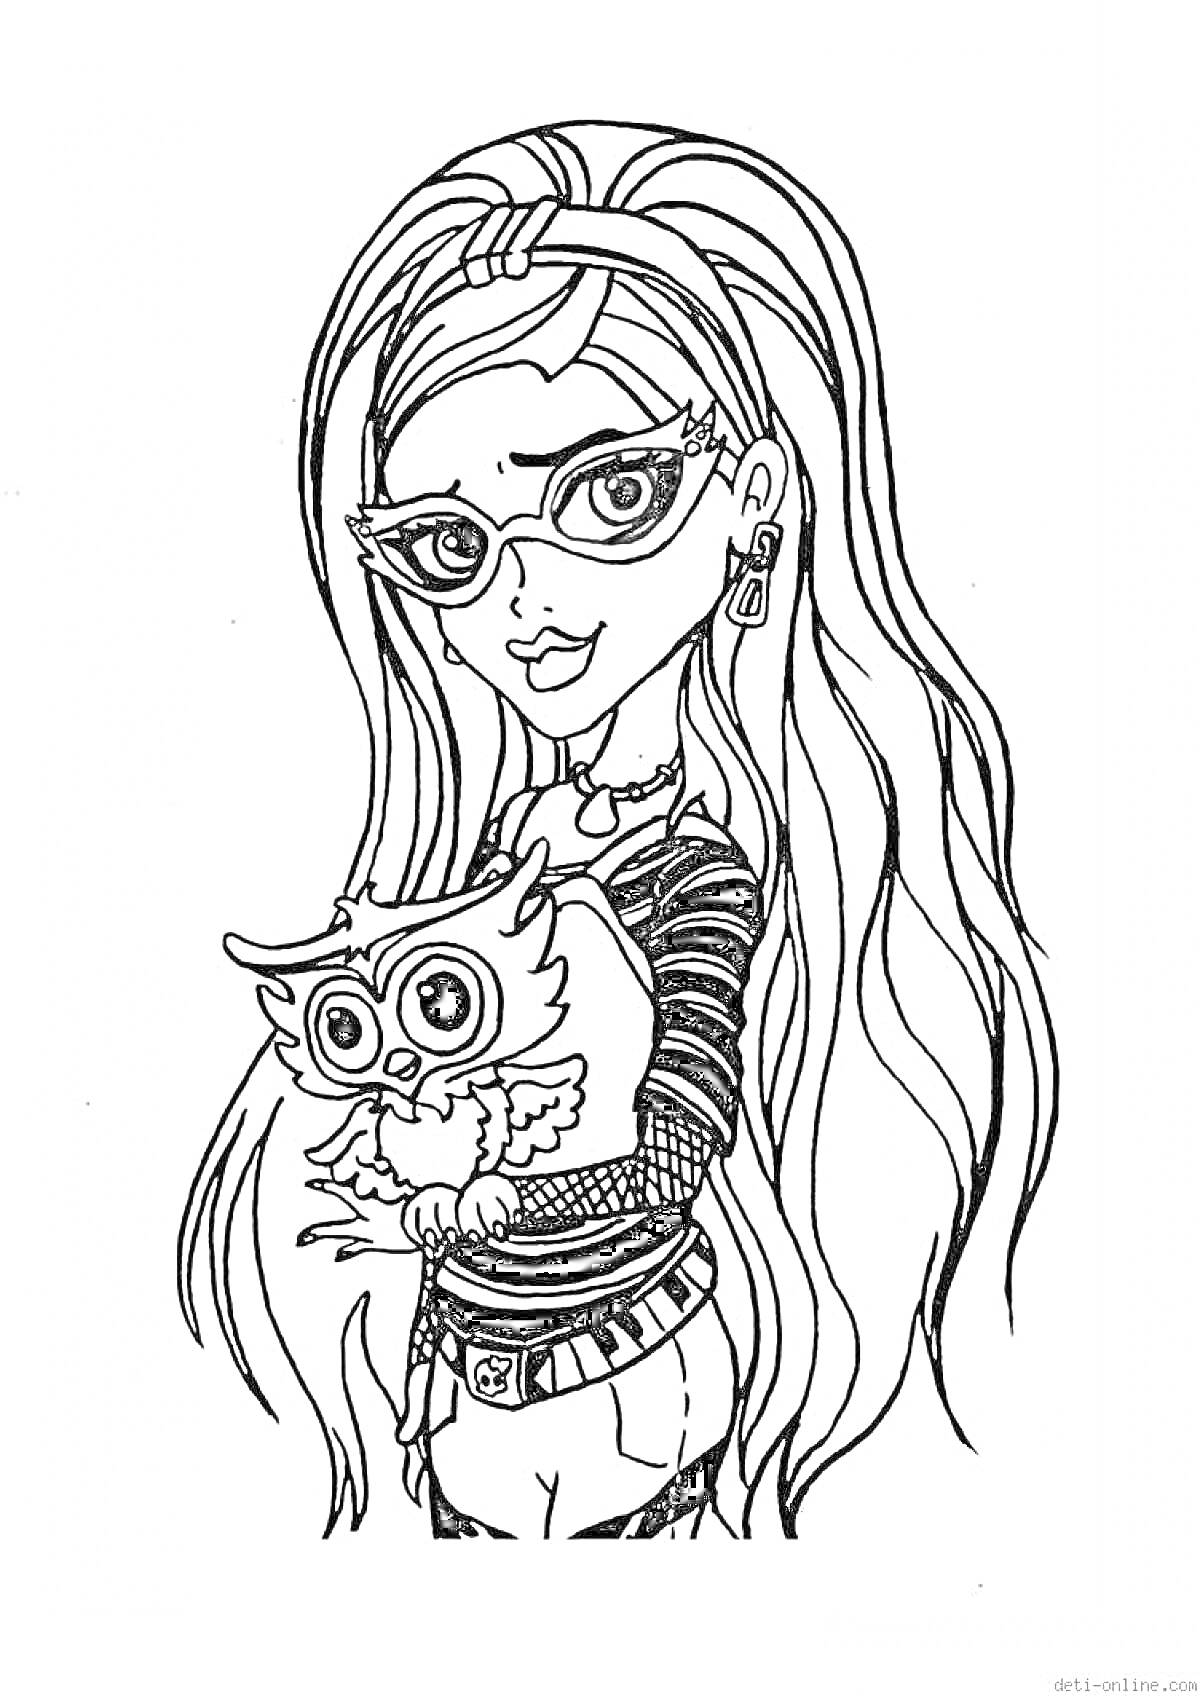 Девушка с длинными волосами и очками держит сову, одета в полосатый свитер и шорты